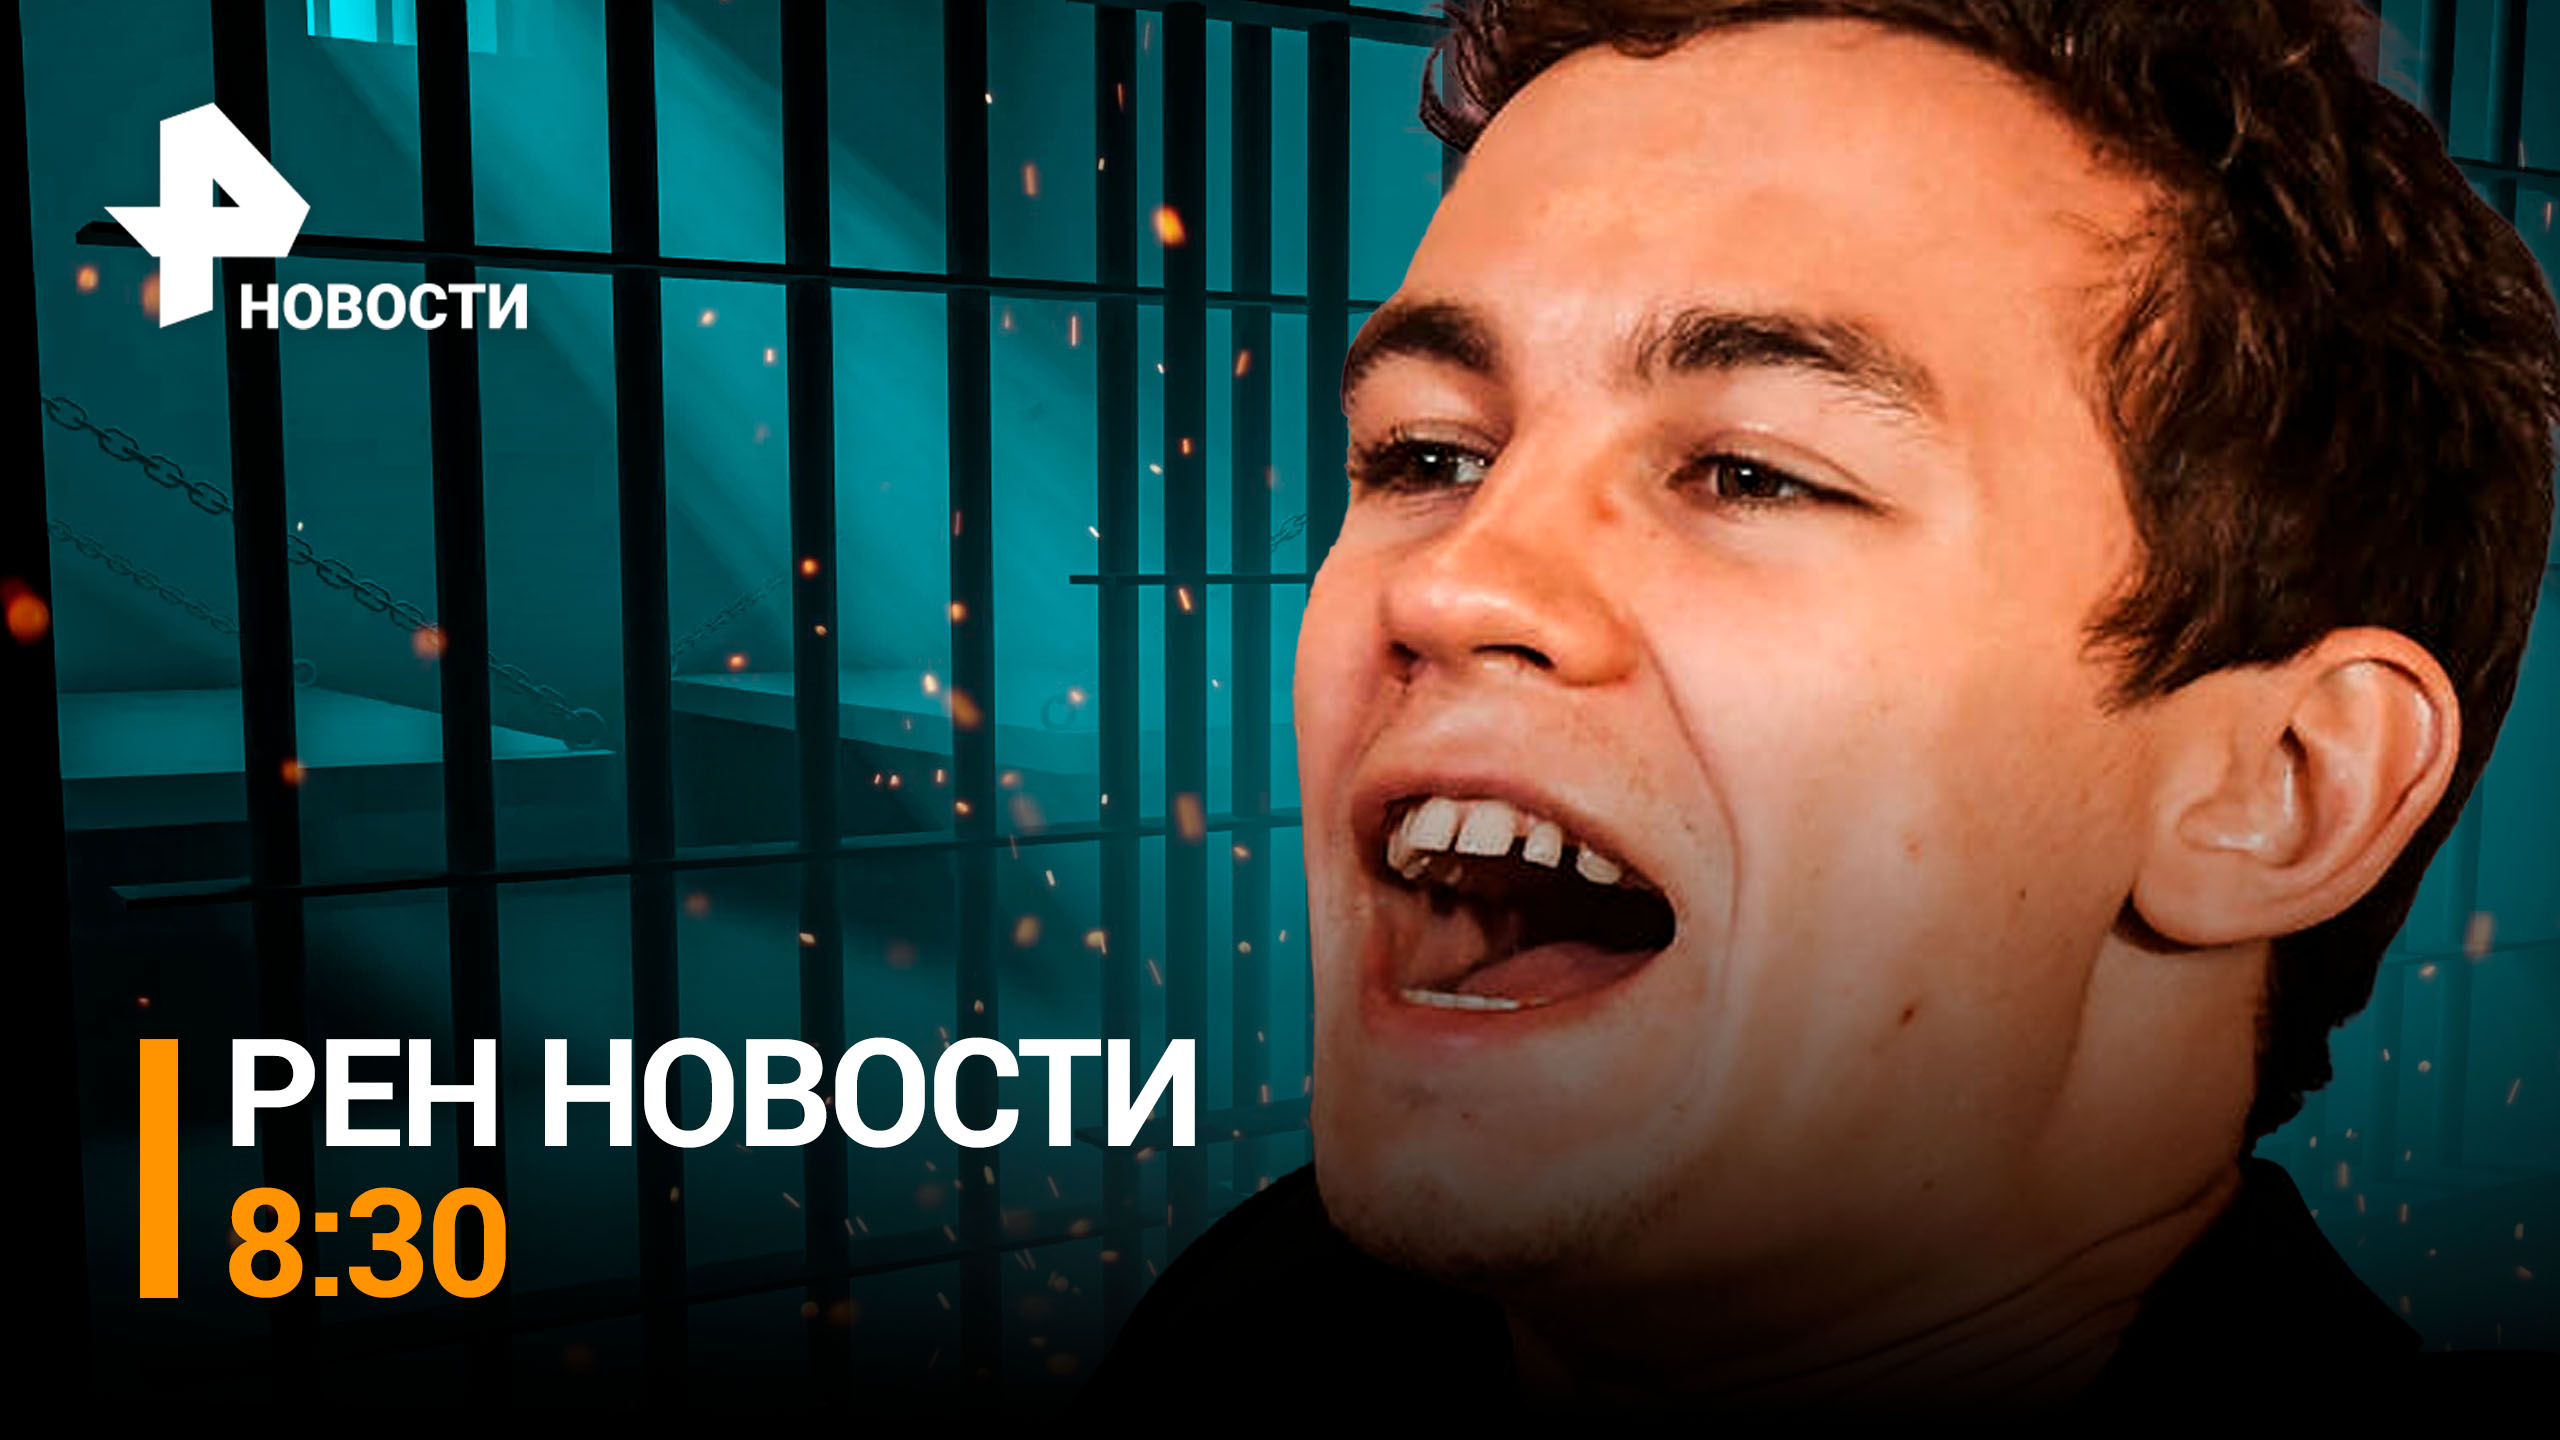 Кологривого арестовали на семь суток за дебош в Новосибирске / РЕН НОВОСТИ 8:30, 21.03.24